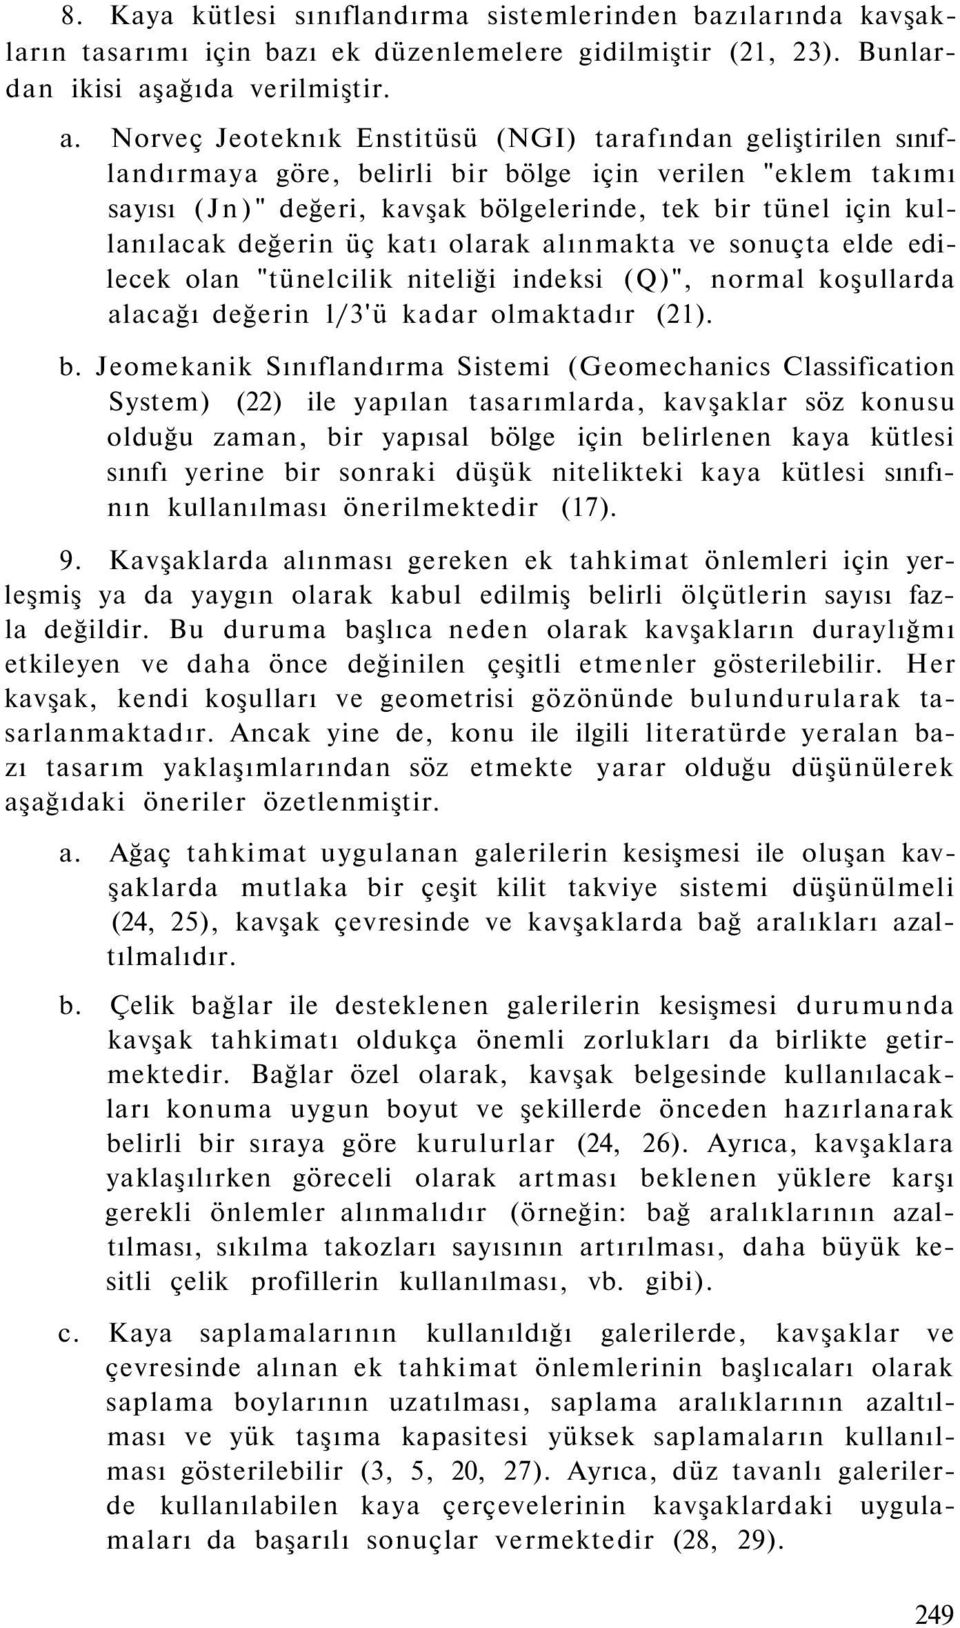 Norveç Jeoteknık Enstitüsü (NGI) tarafından geliştirilen sınıflandırmaya göre, belirli bir bölge için verilen "eklem takımı sayısı (Jn)" değeri, kavşak bölgelerinde, tek bir tünel için kullanılacak